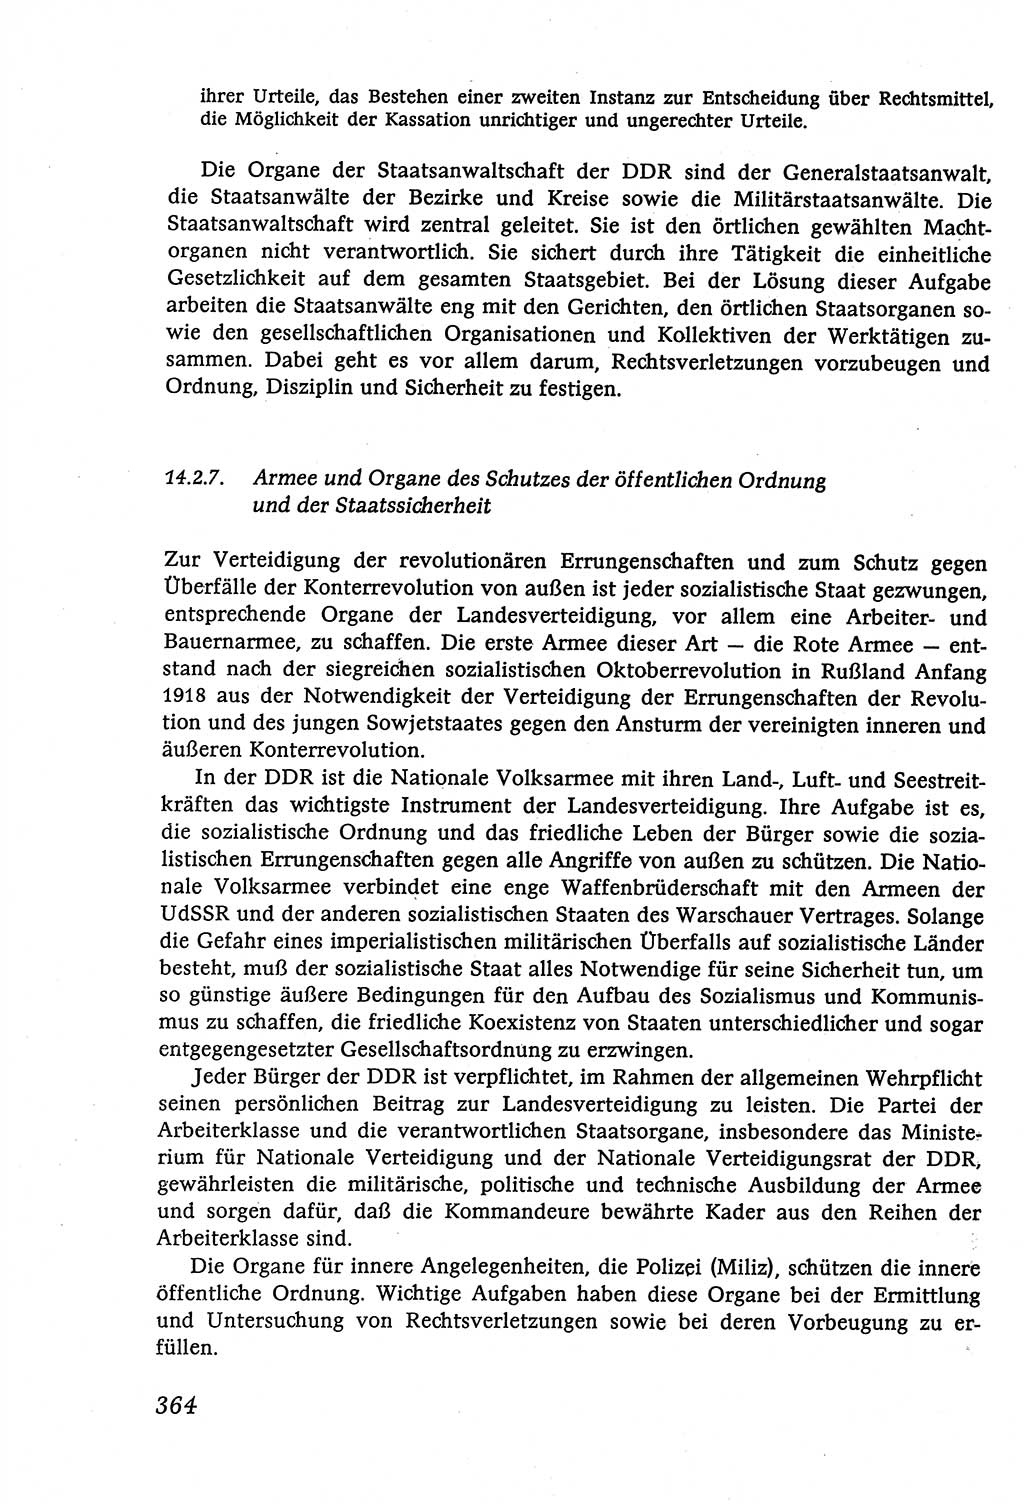 Marxistisch-leninistische (ML) Staats- und Rechtstheorie [Deutsche Demokratische Republik (DDR)], Lehrbuch 1980, Seite 364 (ML St.-R.-Th. DDR Lb. 1980, S. 364)